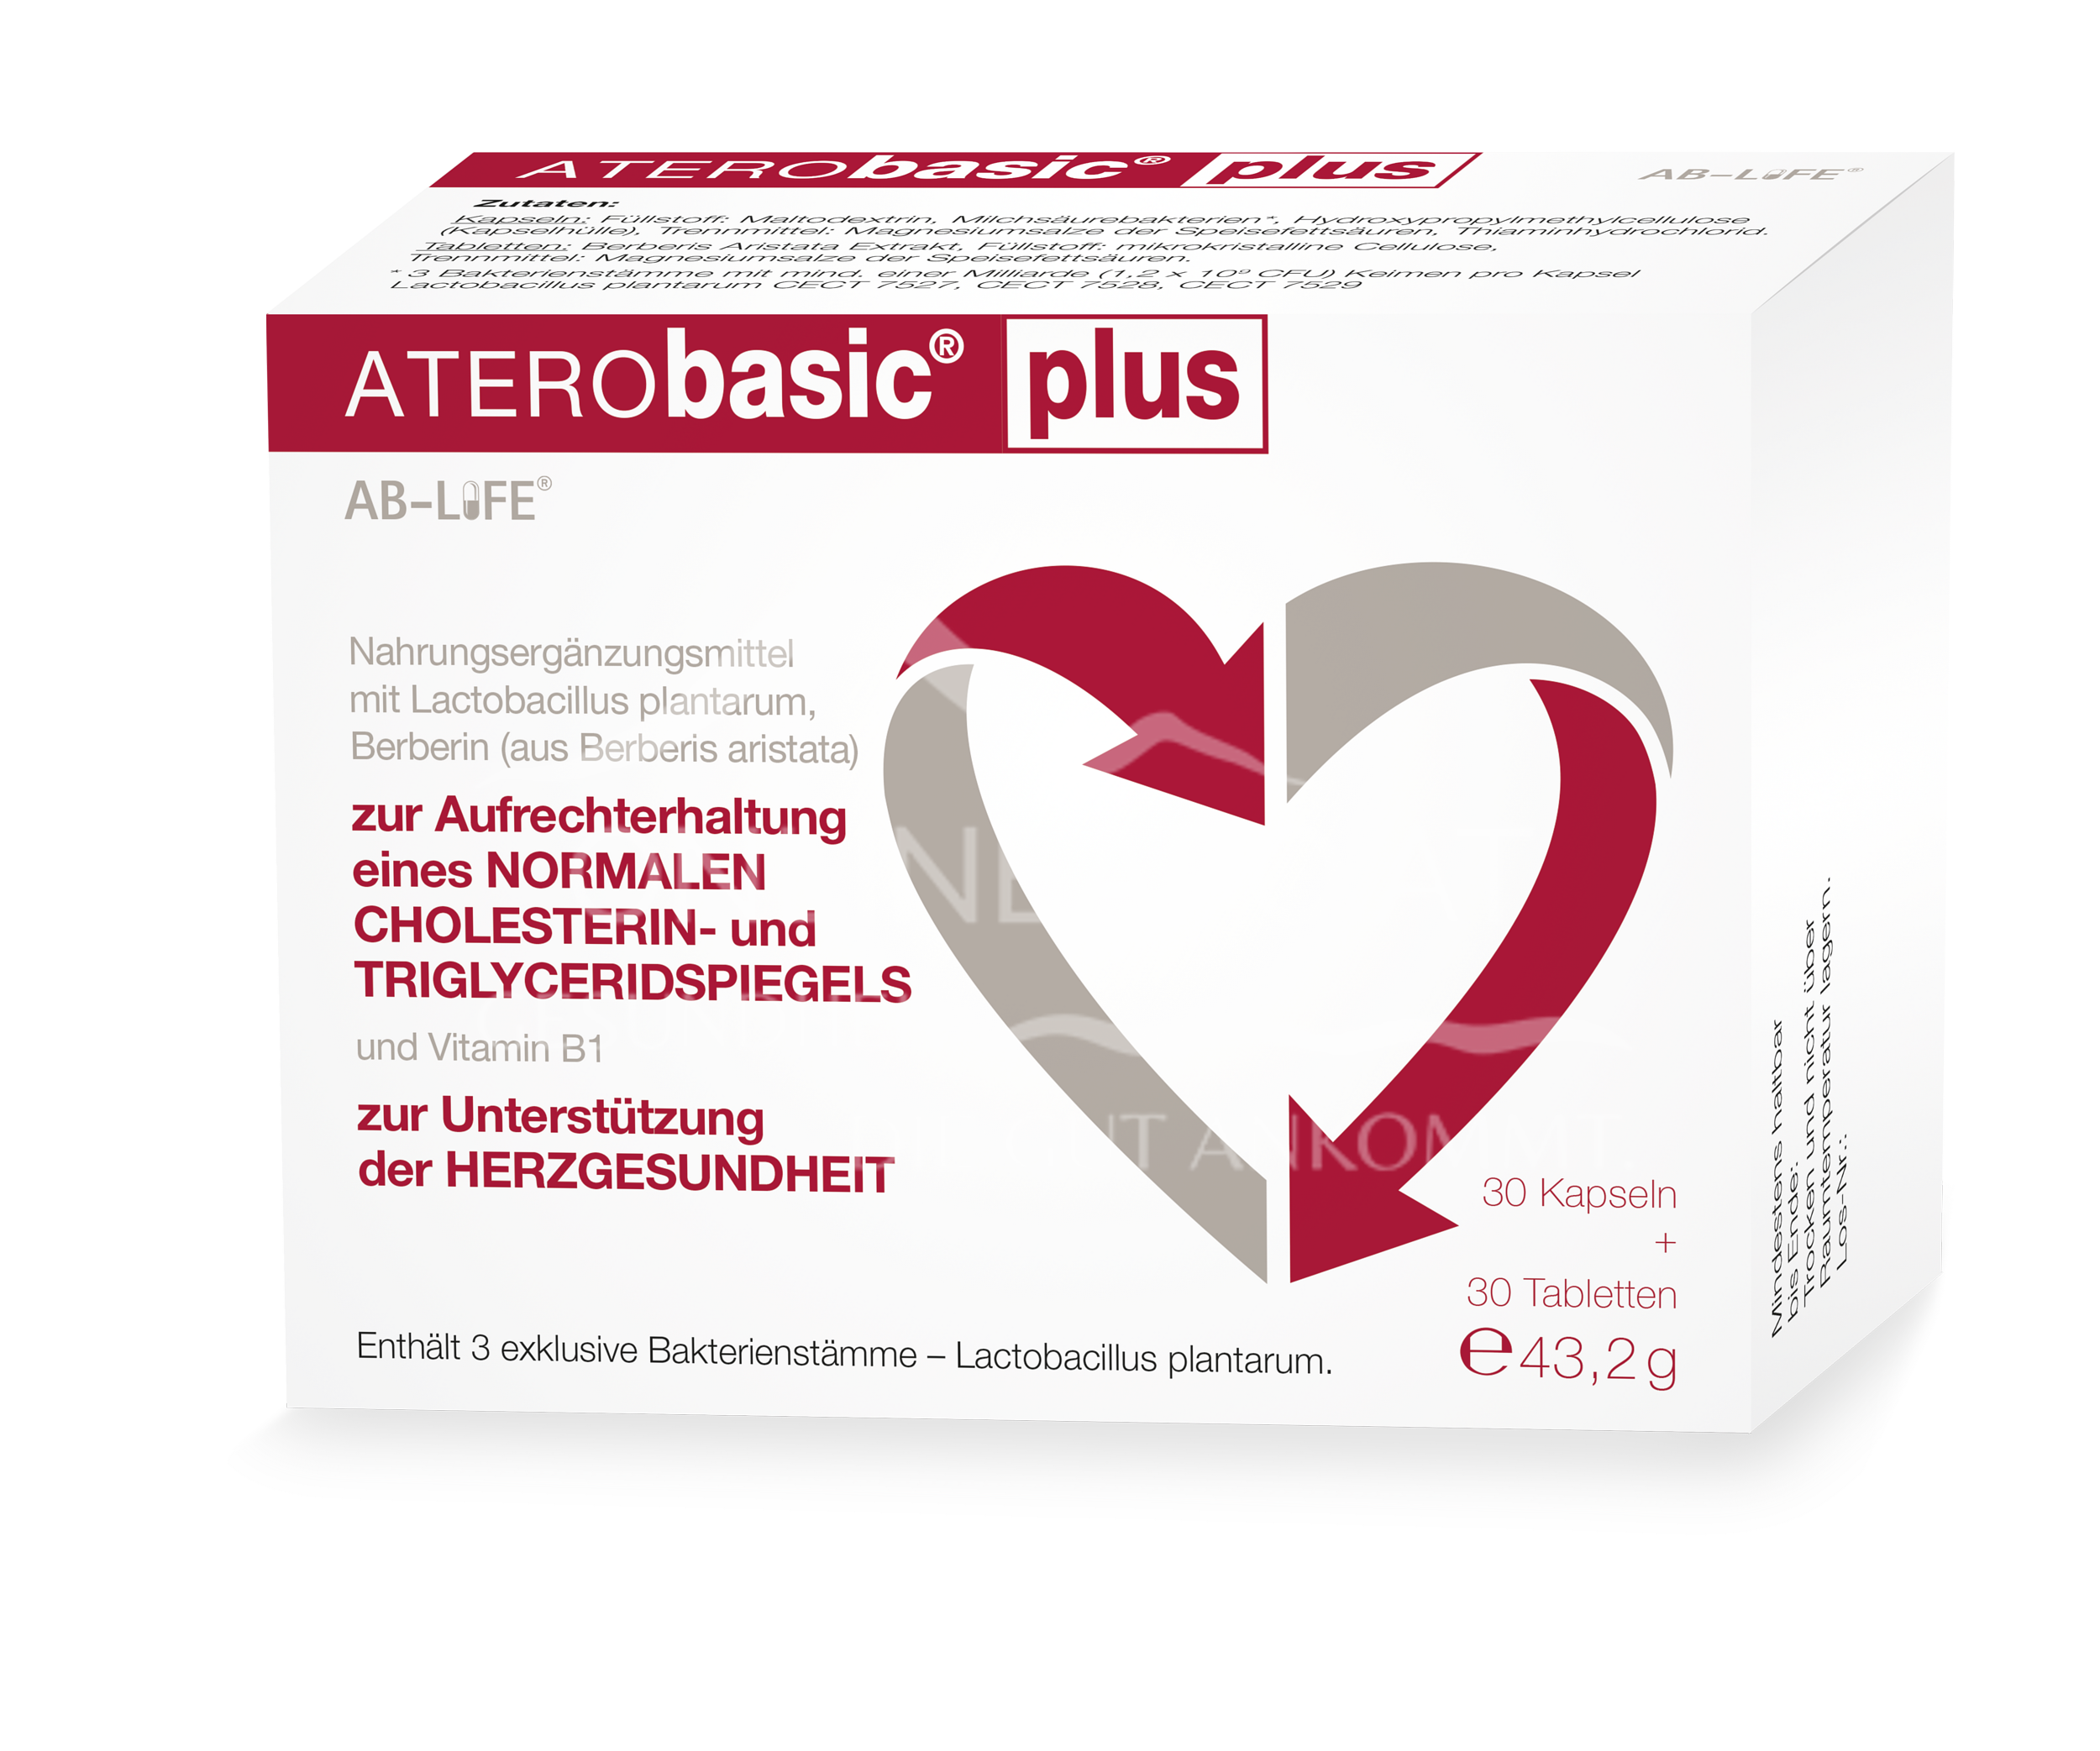 ATERObasic® plus 30 Kapseln + 30 Tabletten